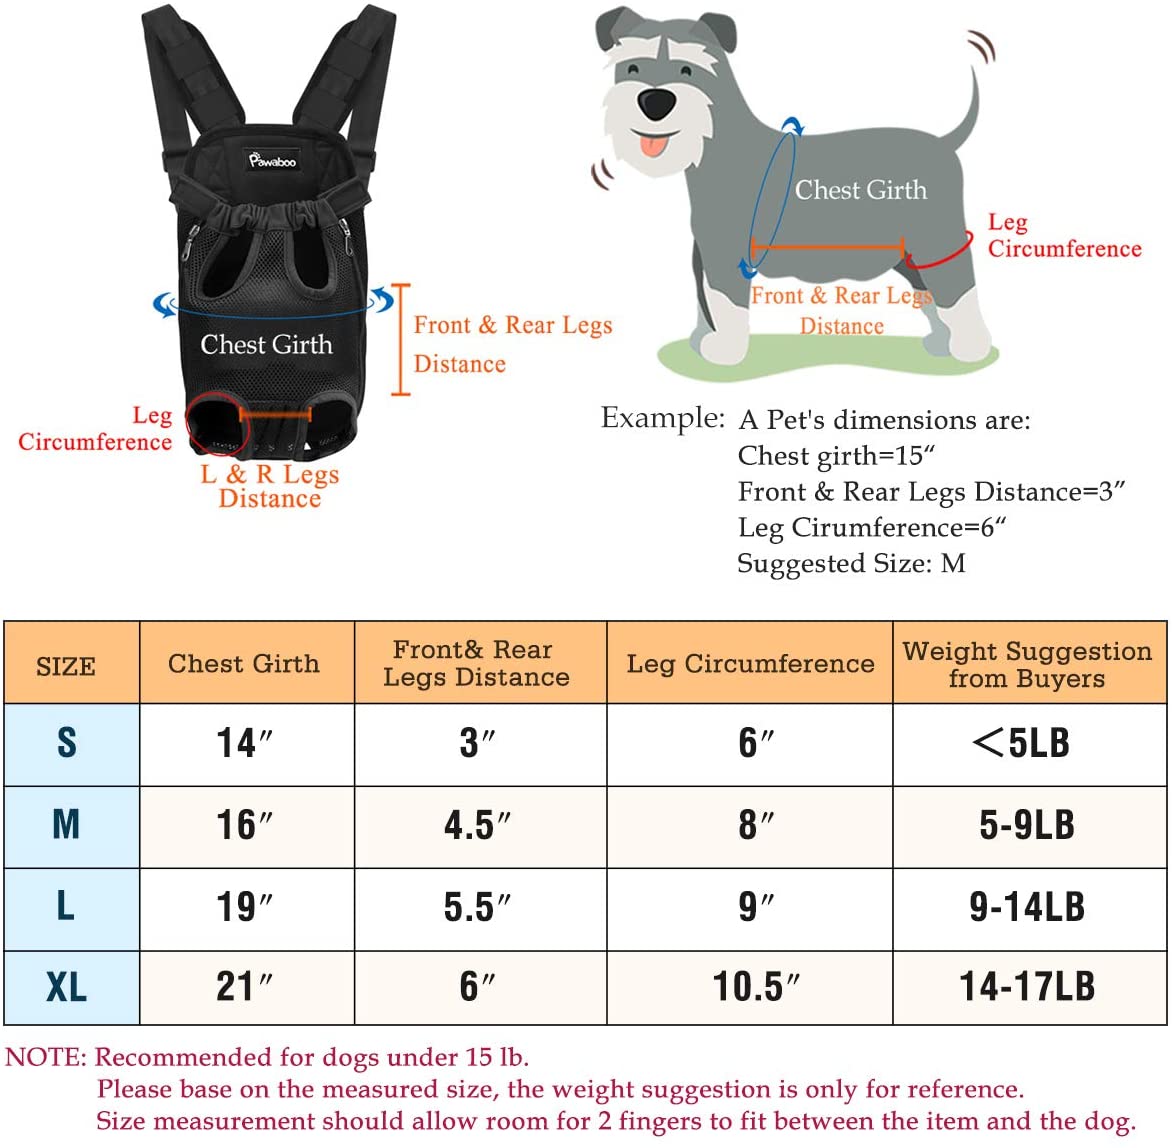  Pawaboo Mochila del Perro - Adjustable Bolsa Delantera Pet Front Cat Dog Carrier Backpack/Piernas Afuera & Fácil de Ajustar para Viajar/Senderismo/Camping, Talla M - Camuflaje 